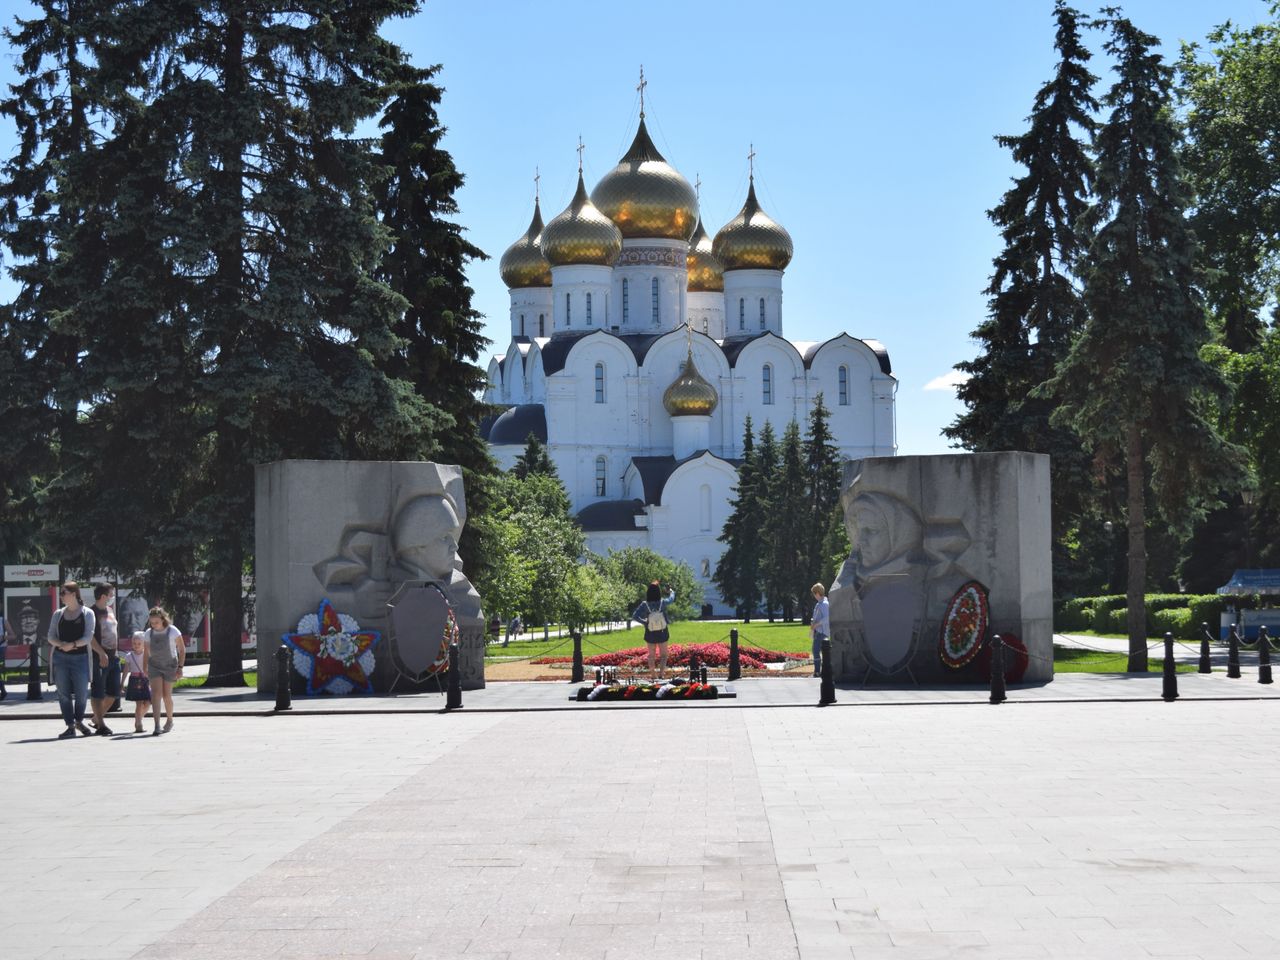 Экскурсия по православным храмам Ярославля | Цена 5000₽, отзывы, описание экскурсии